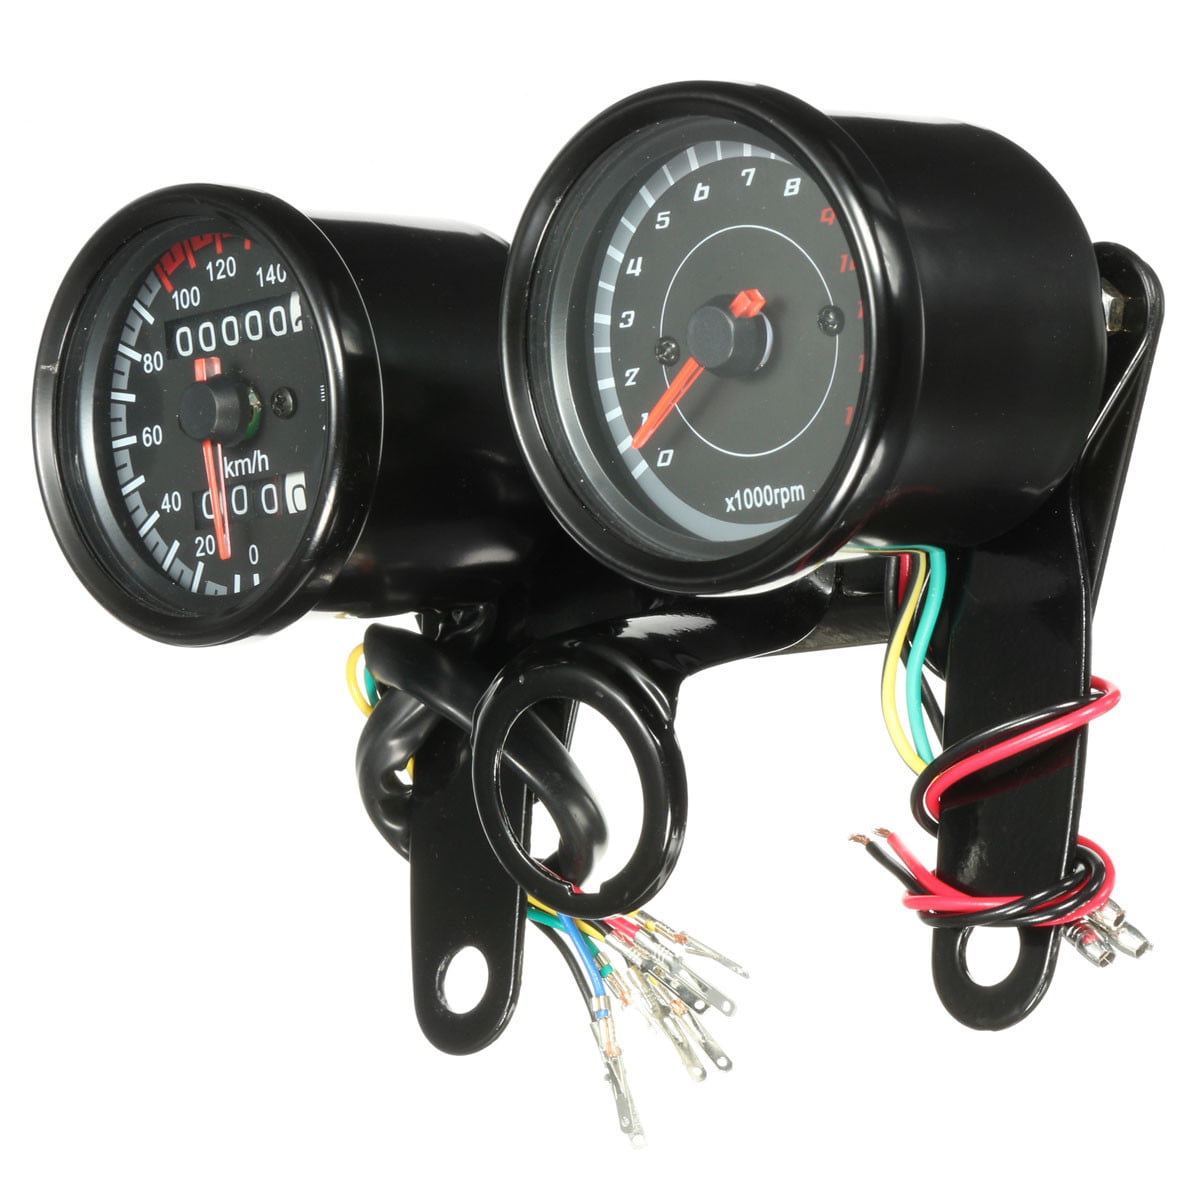 DEALPEAK Universal DC 12V Motorcycle LED Backlight Tachometer Electronic Tach Meter Gauge 